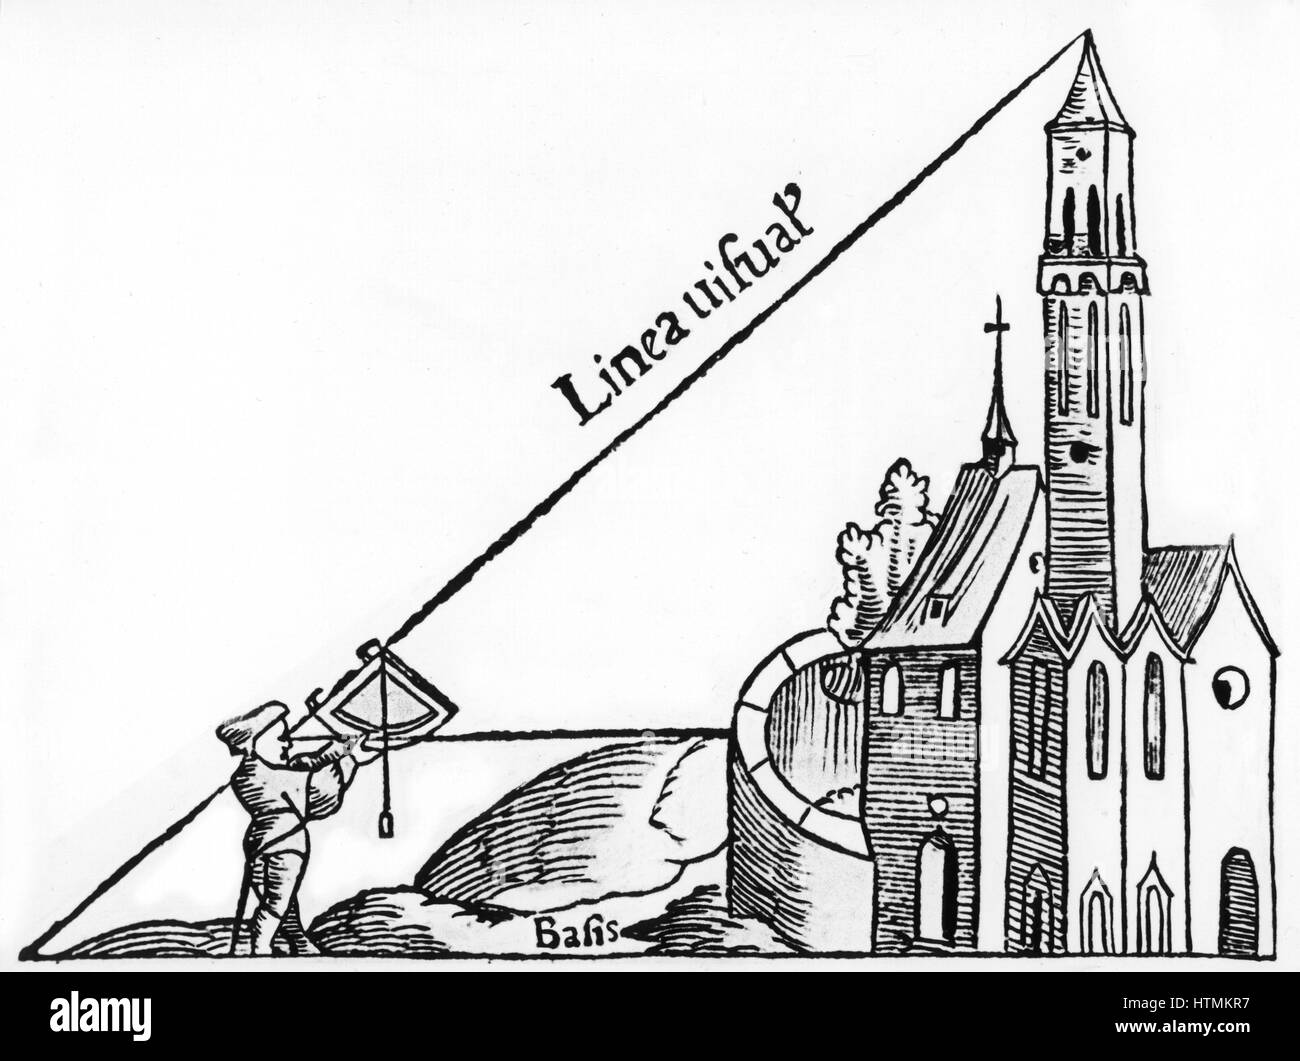 Verwendung von einem Quadranten mit einem Senklot zur Berechnung der Höhe eines Turmes durch Triangulation. Von Sebastian Münster "Rudimenta Mathematica", Basel 1551. Holzschnitt Stockfoto